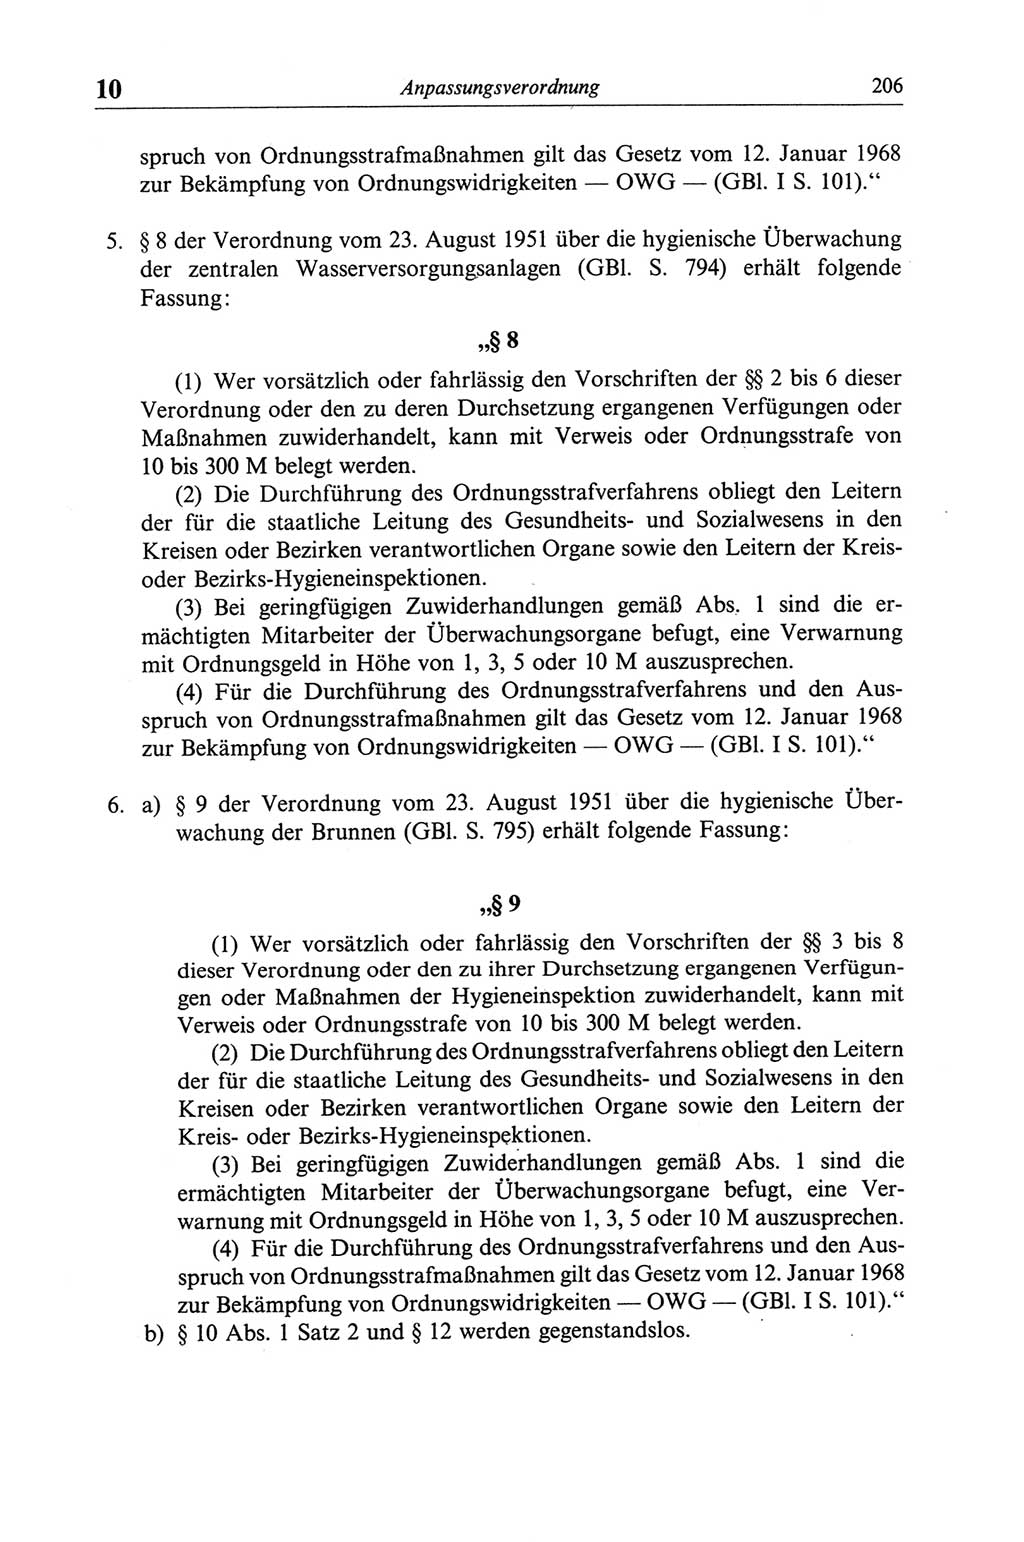 Strafgesetzbuch (StGB) der Deutschen Demokratischen Republik (DDR) und angrenzende Gesetze und Bestimmungen 1968, Seite 206 (StGB Ges. Best. DDR 1968, S. 206)